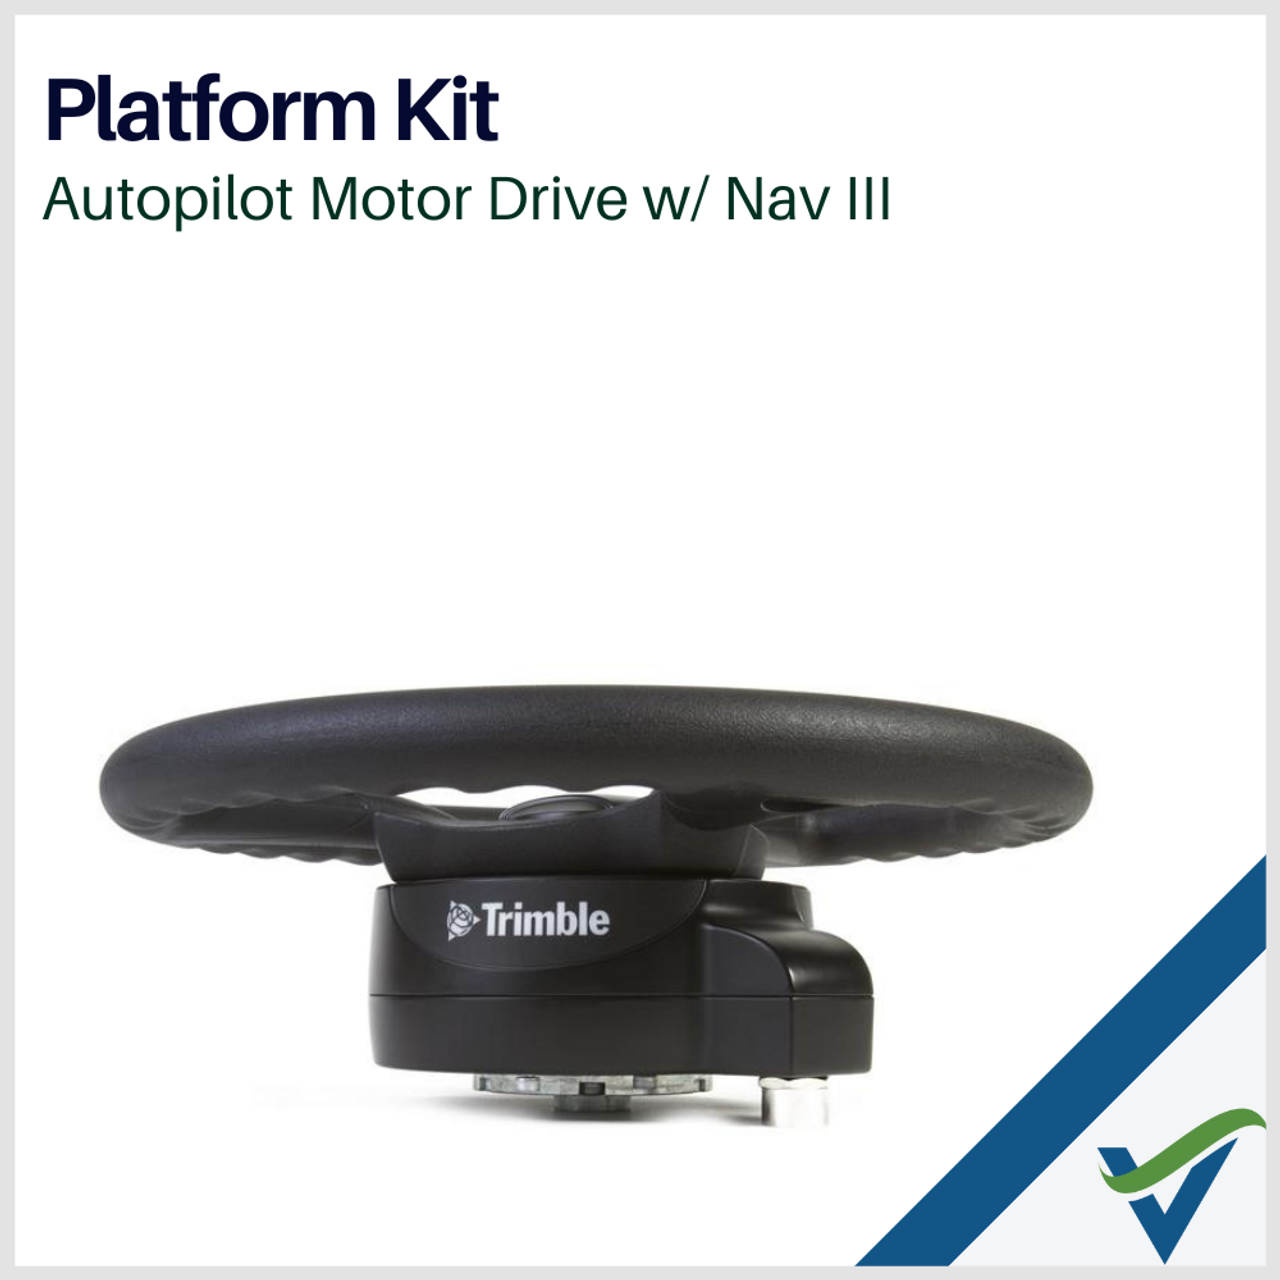 Platform Kit, APMD w/ NavIII - Deutz Fahr Tractors